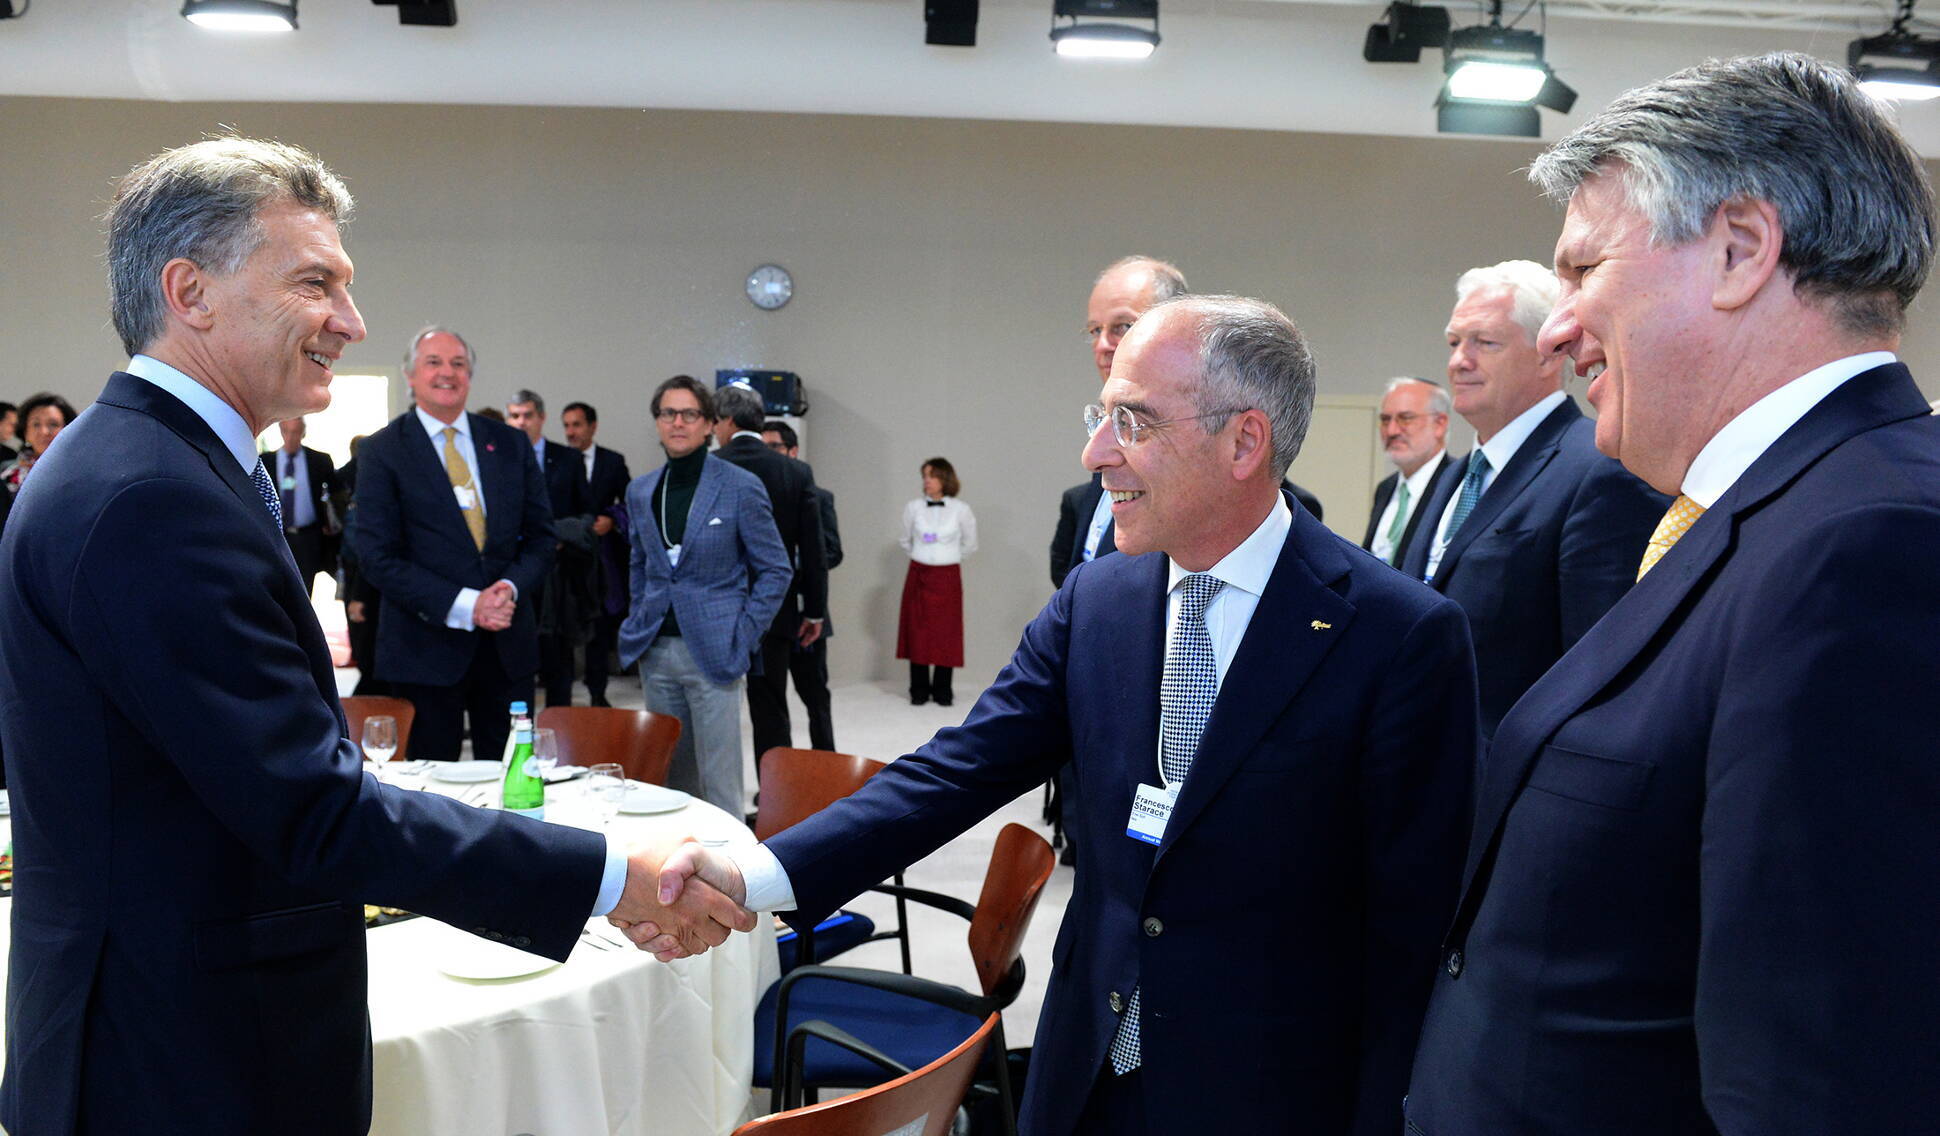 El Presidente se reunió con empresarios en el Foro Económico Mundial que se realiza en Davos, Suiza.